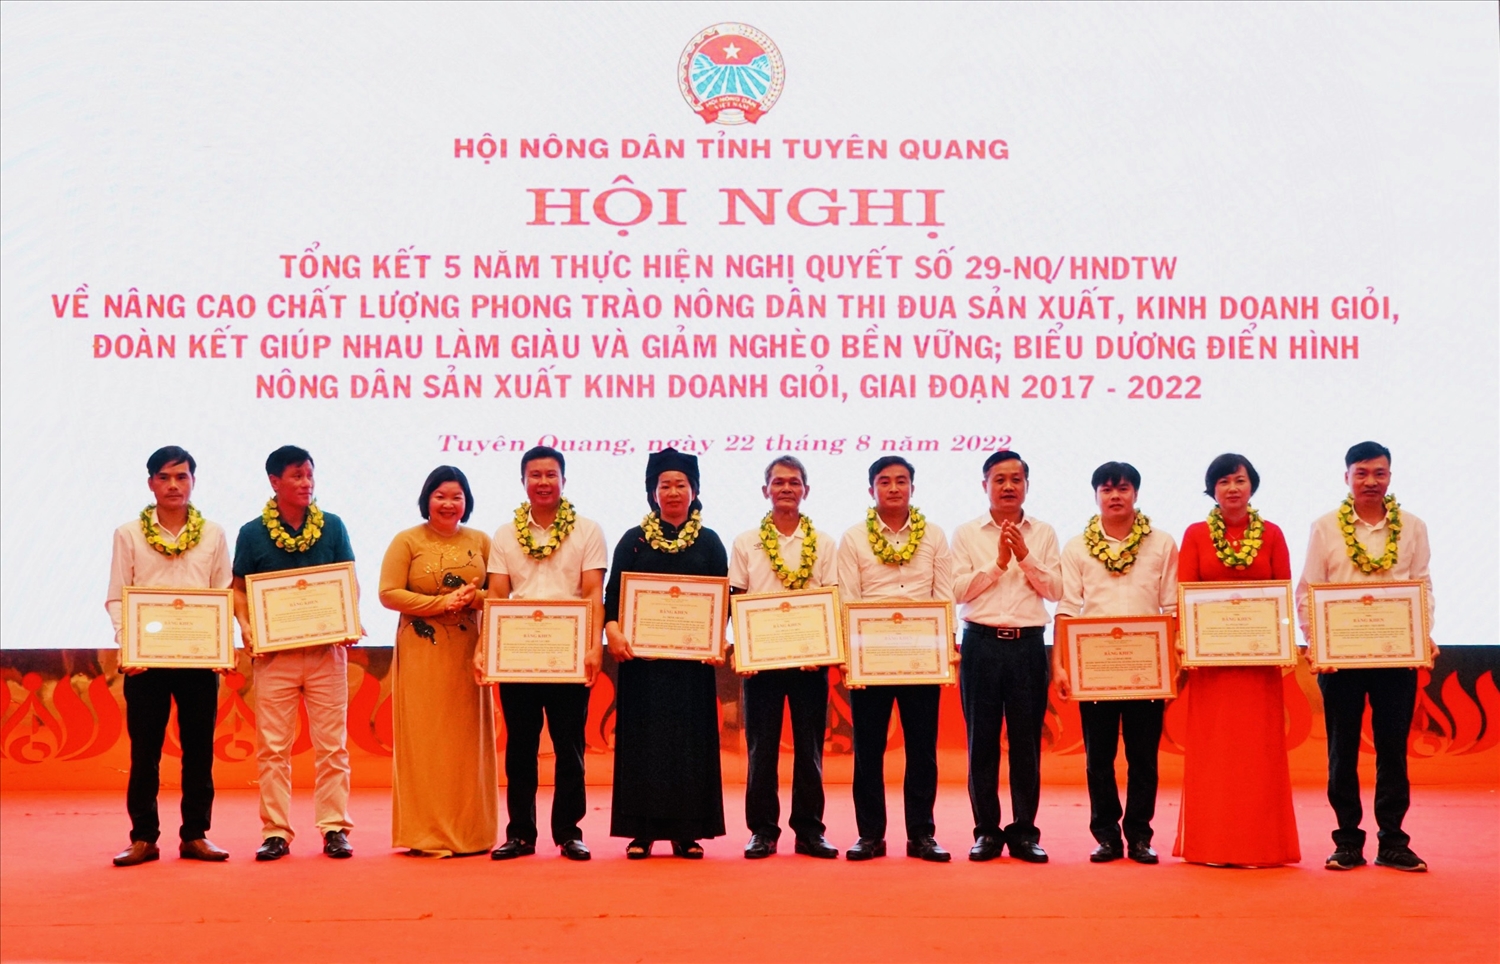 Lãnh đạo Trung ương Hội Nông dân Việt Nam, lãnh đạo UBND tỉnh trao Bằng khen và hoa cho các nông dân điển hình sản xuất kinh doanh giỏi